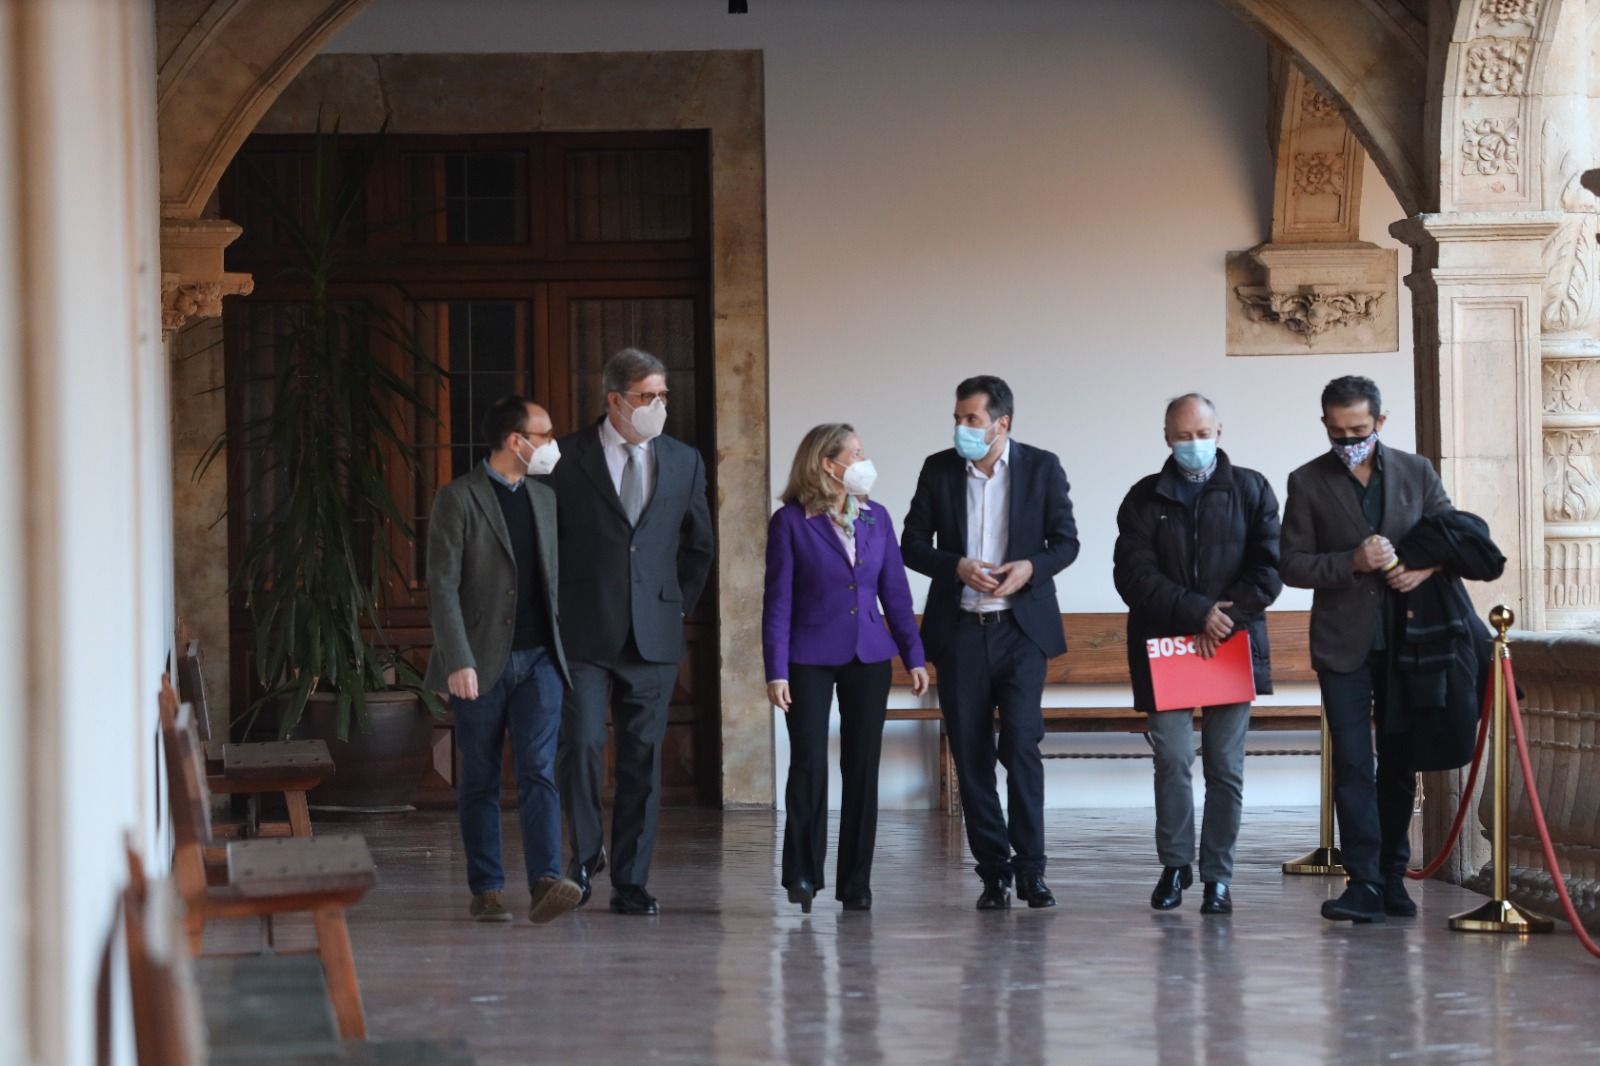 Escuela de Gobierno PSOE en Salamanca con la presencia de Nadia Calviño y Luis Tudanca | Foto: S24horas